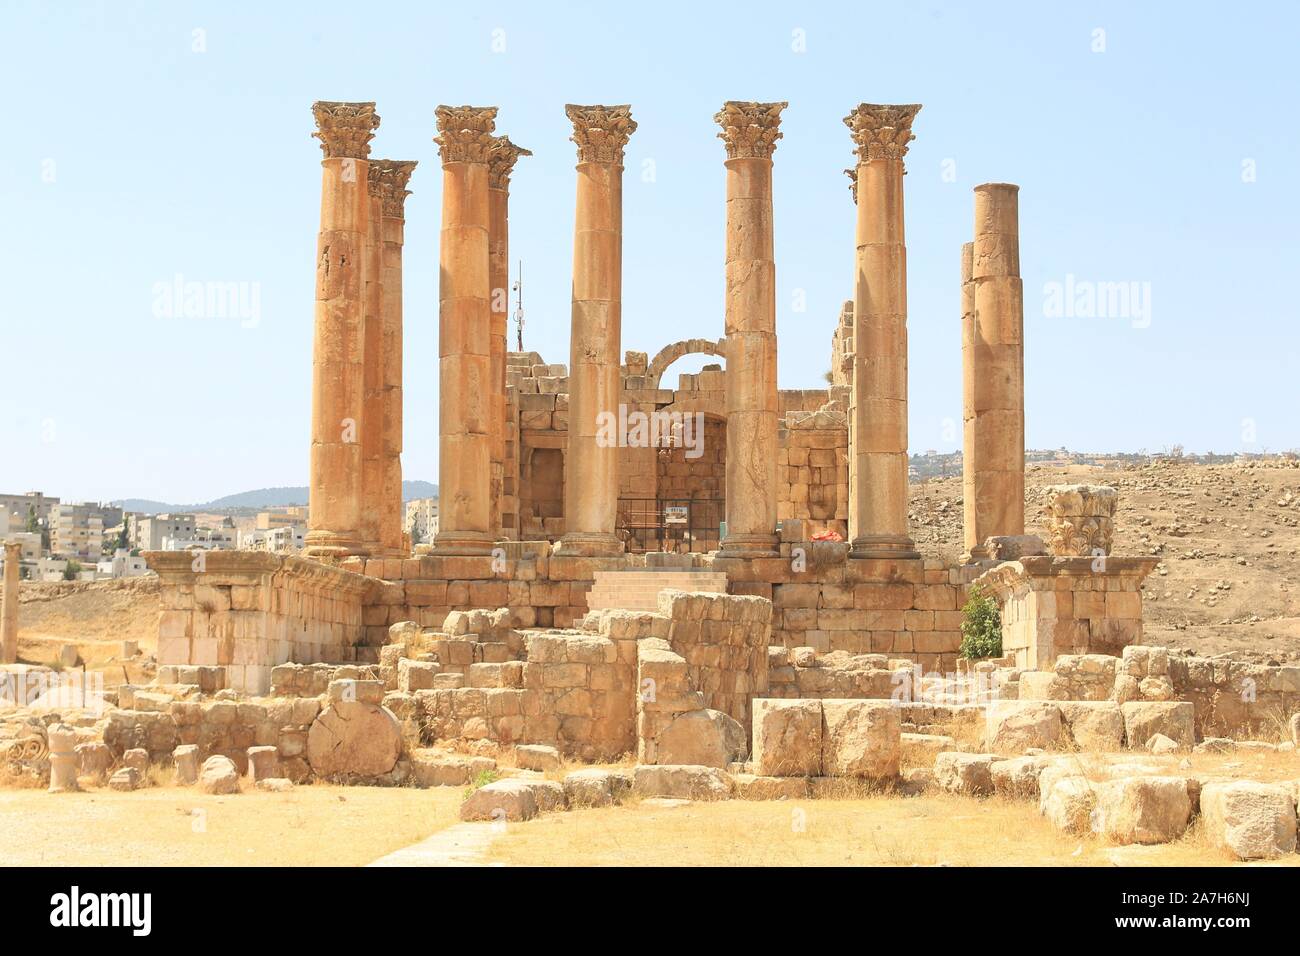 JORDANIA. JERASH AMMAN. Jerash , es el sitio de las ruinas de la ciudad grecorromana de Gerasa, también conocida como Antioquía en el Río Dorado. Jerash es considerada una de las ciudades romanas más importantes y mejor conservadas del Cercano Oriente. Era una ciudad de la Decápolis.. RESTOS DEL TEMPLO DE ARTEMISA. Stock Photo